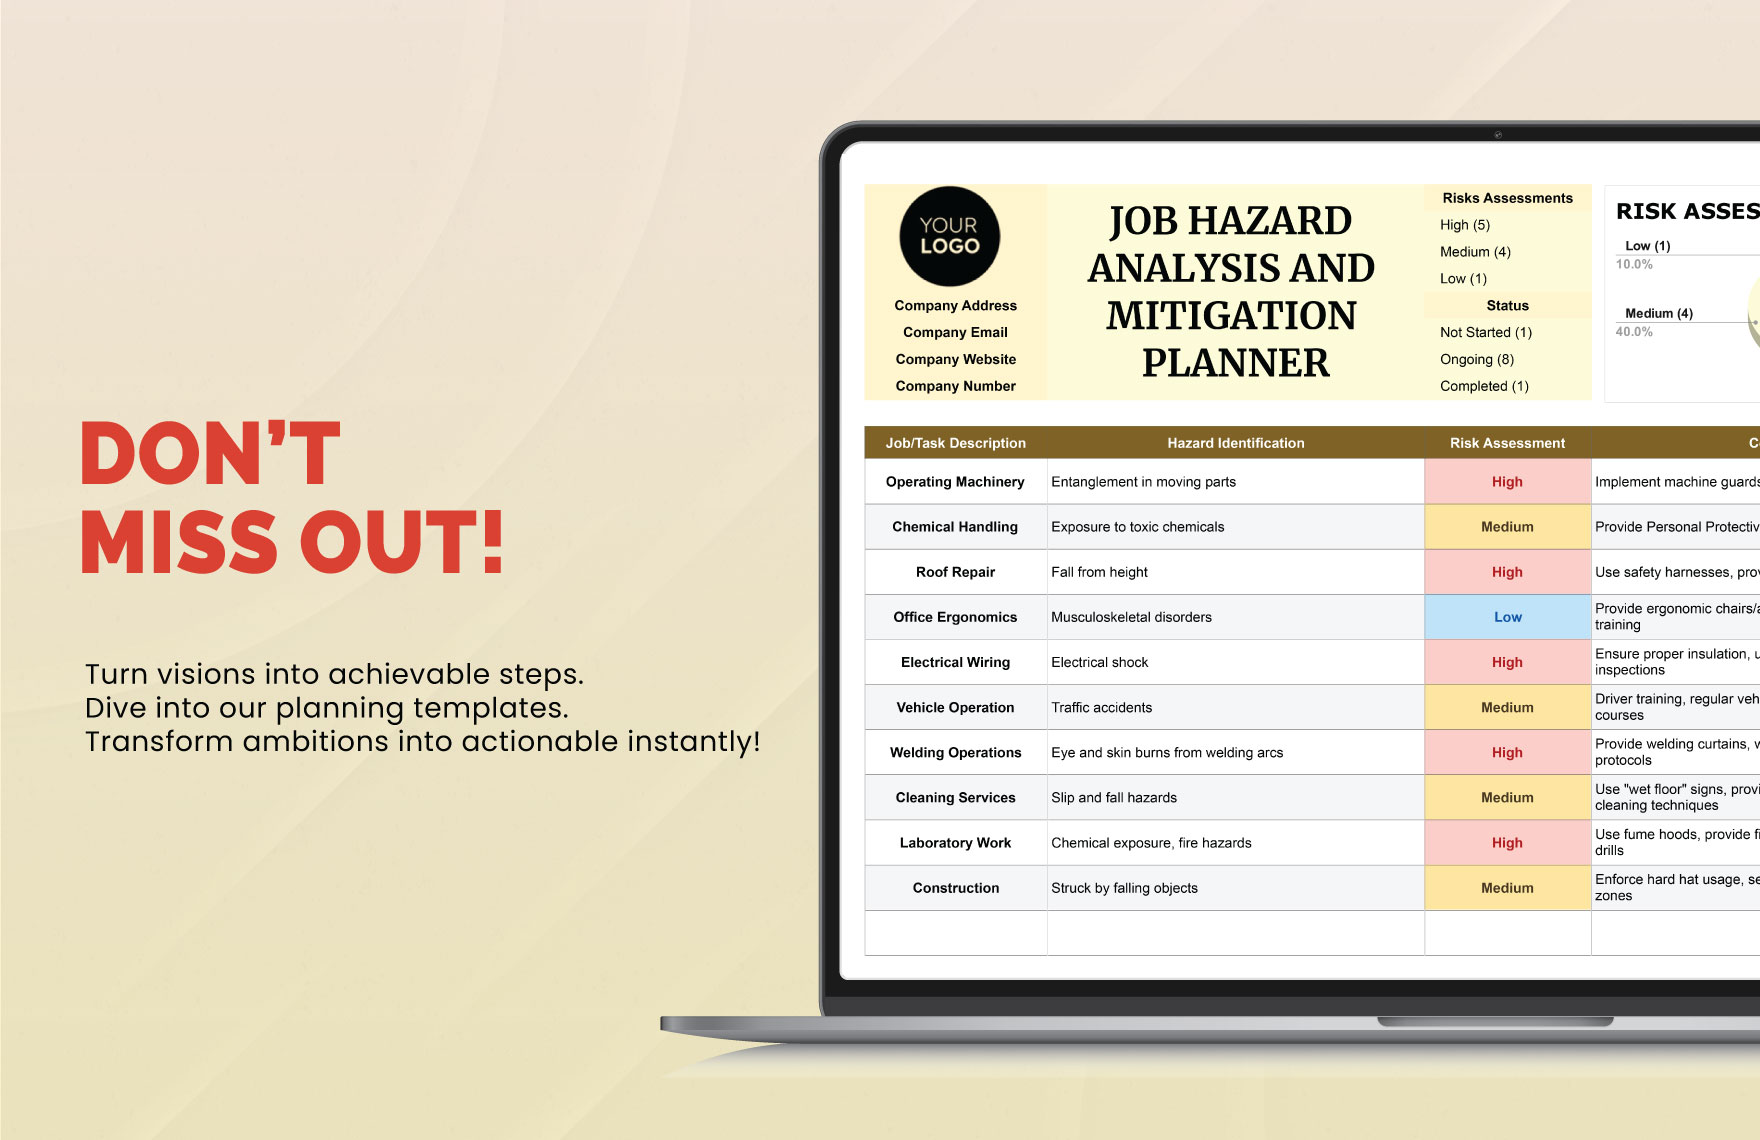 Job Hazard Analysis and Mitigation Planner HR Template